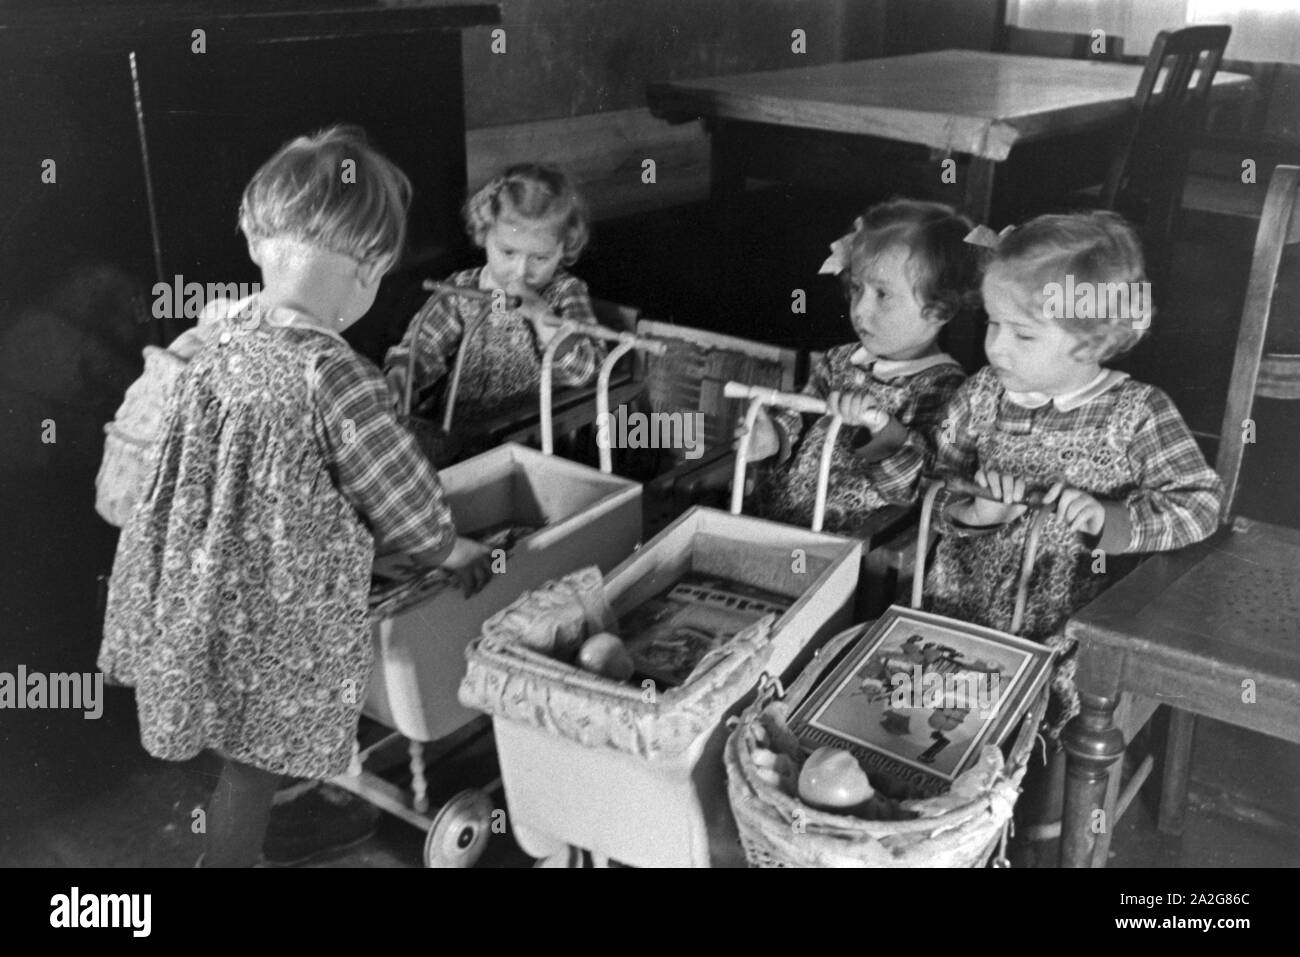 Die Knipser Vierlinge als Kleinkinder mit ihren Puppenwagen, Deutschland 1930er Jahre. Knipser's quadruplet girls with their doll's prams, Germany 1930s. Stock Photo